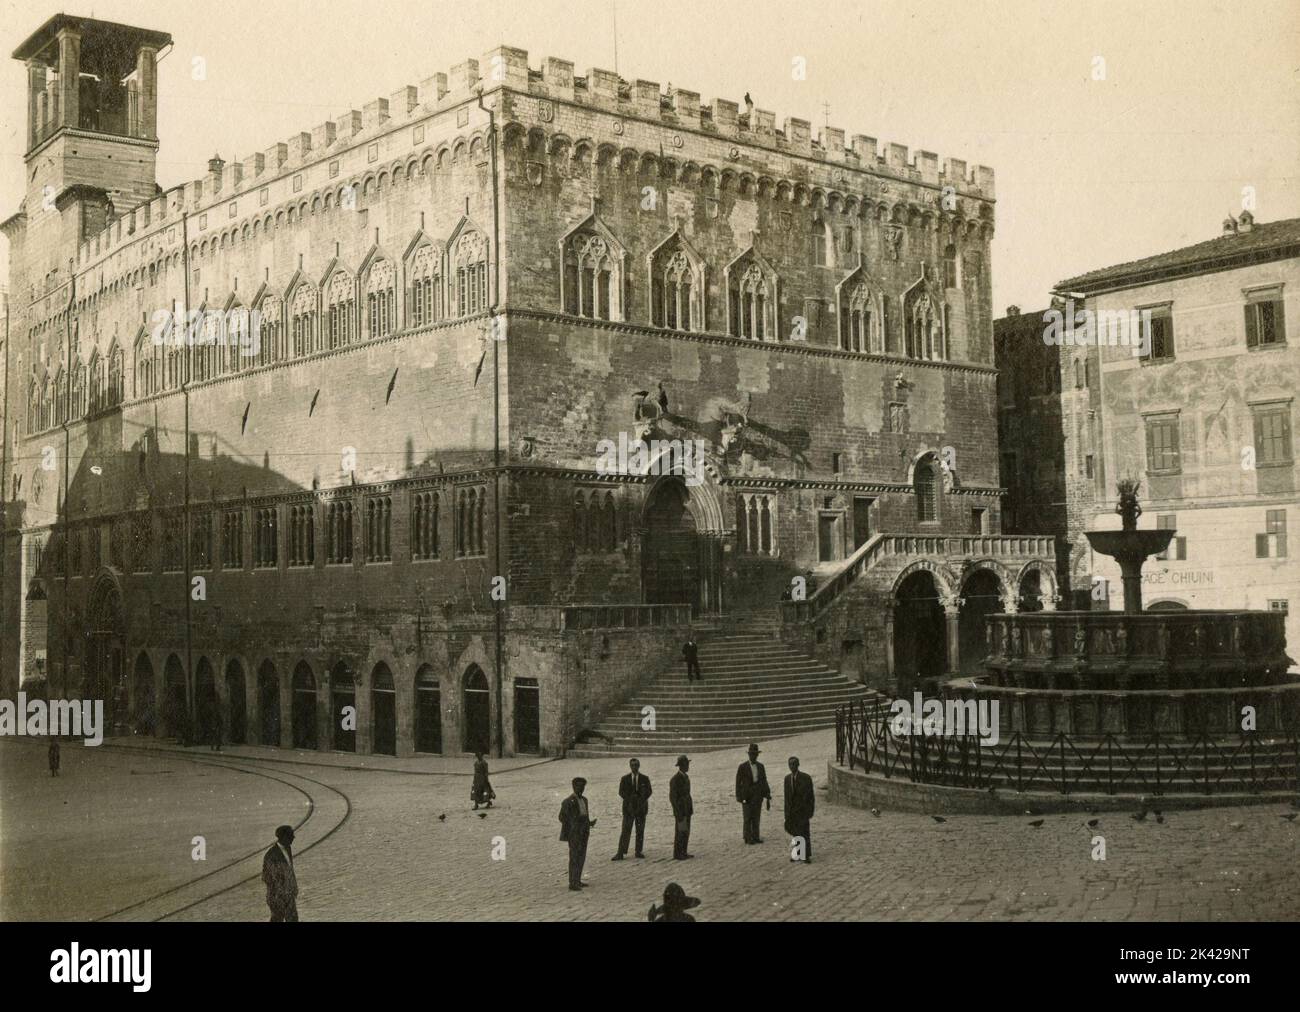 Group of men outside the Palazzo dei Priori in Piazza IV Novembre, Perugia, Italy 1920s Stock Photo